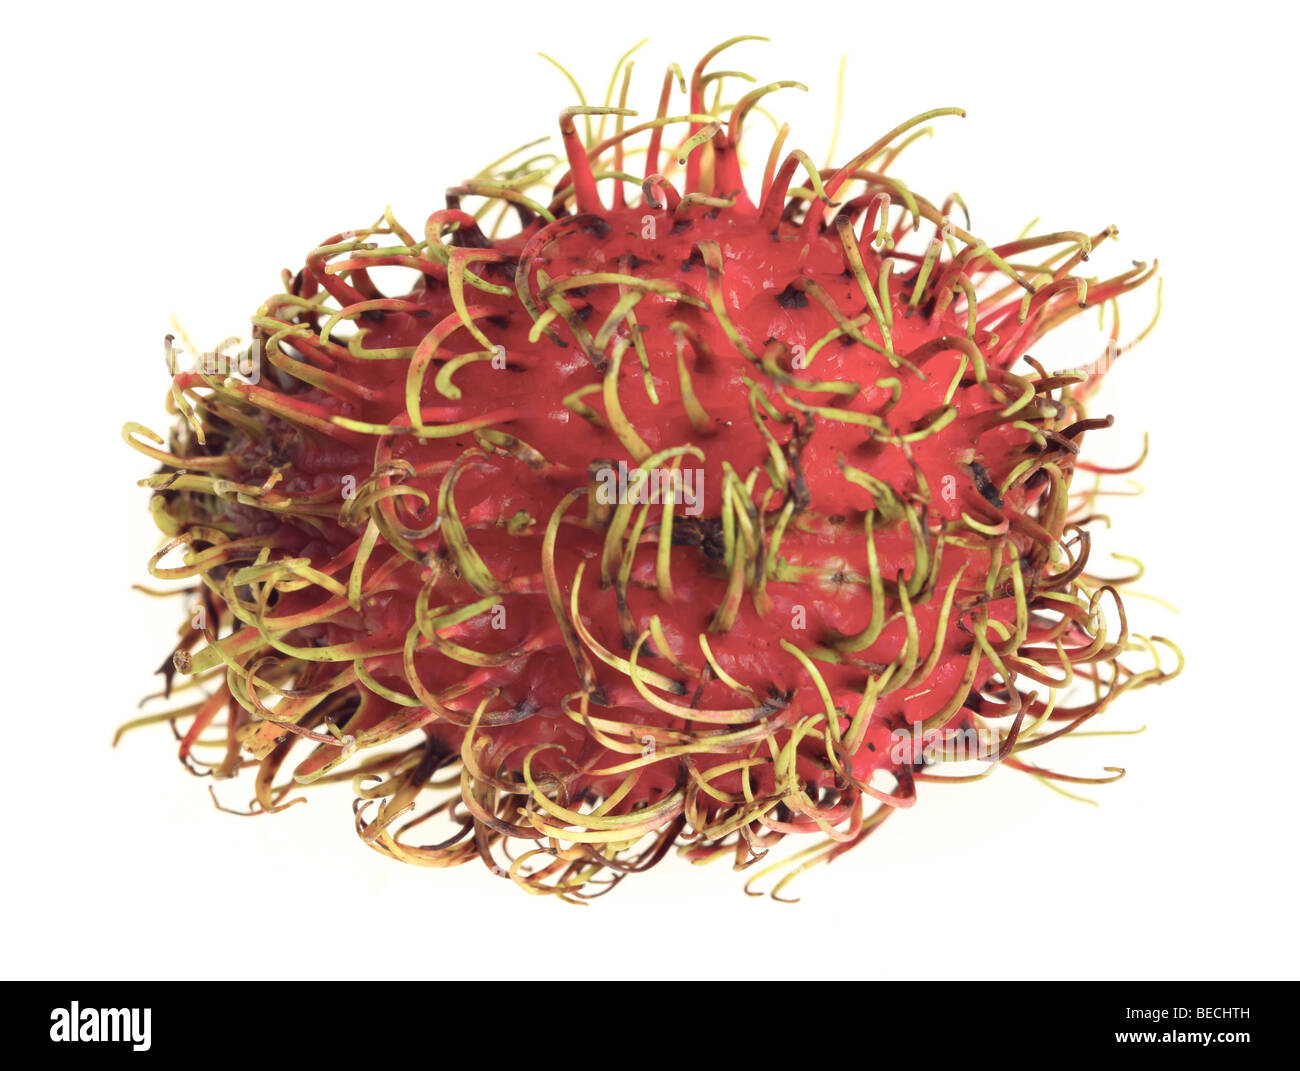 Makro einer Rambutan Frucht, ein Verwandter von Litschis, über weiße Stäbchen sind die Früchte des Baumes Napelium lappaceum Stockfoto